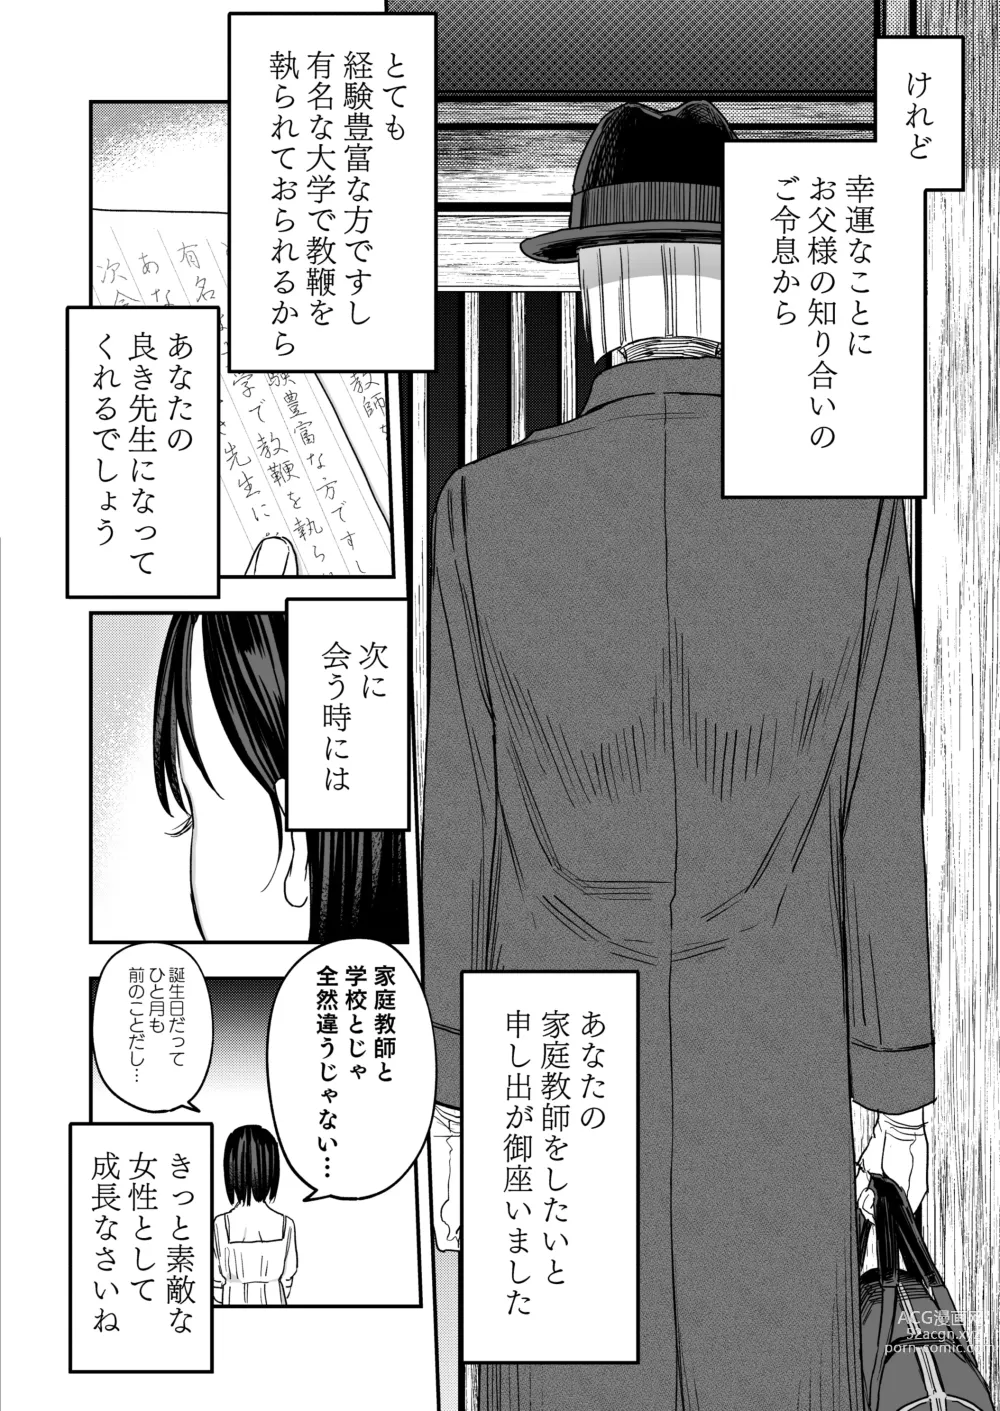 Page 3 of doujinshi Hachiroku Sou - Ieori to Hana Katajikena no Yome